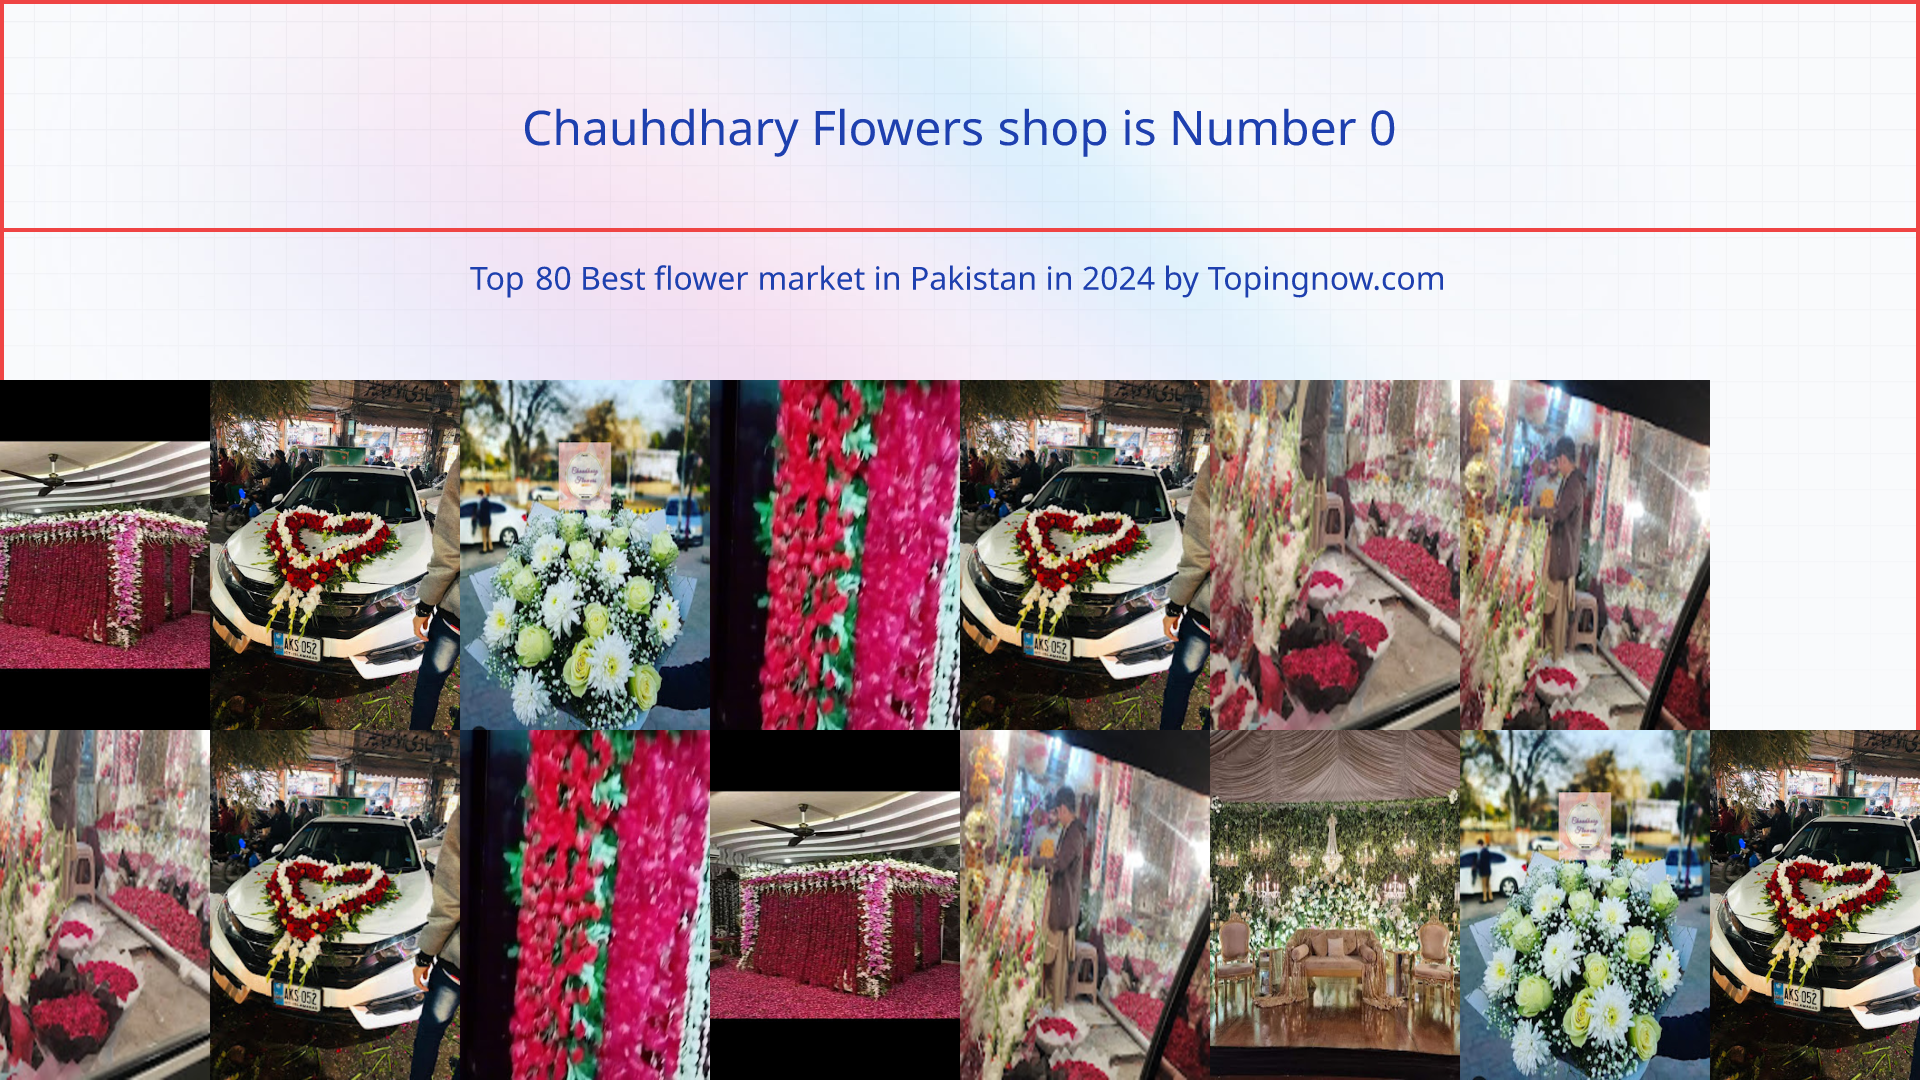 Chauhdhary Flowers shop: Top 80 Best flower market in Pakistan in 2024